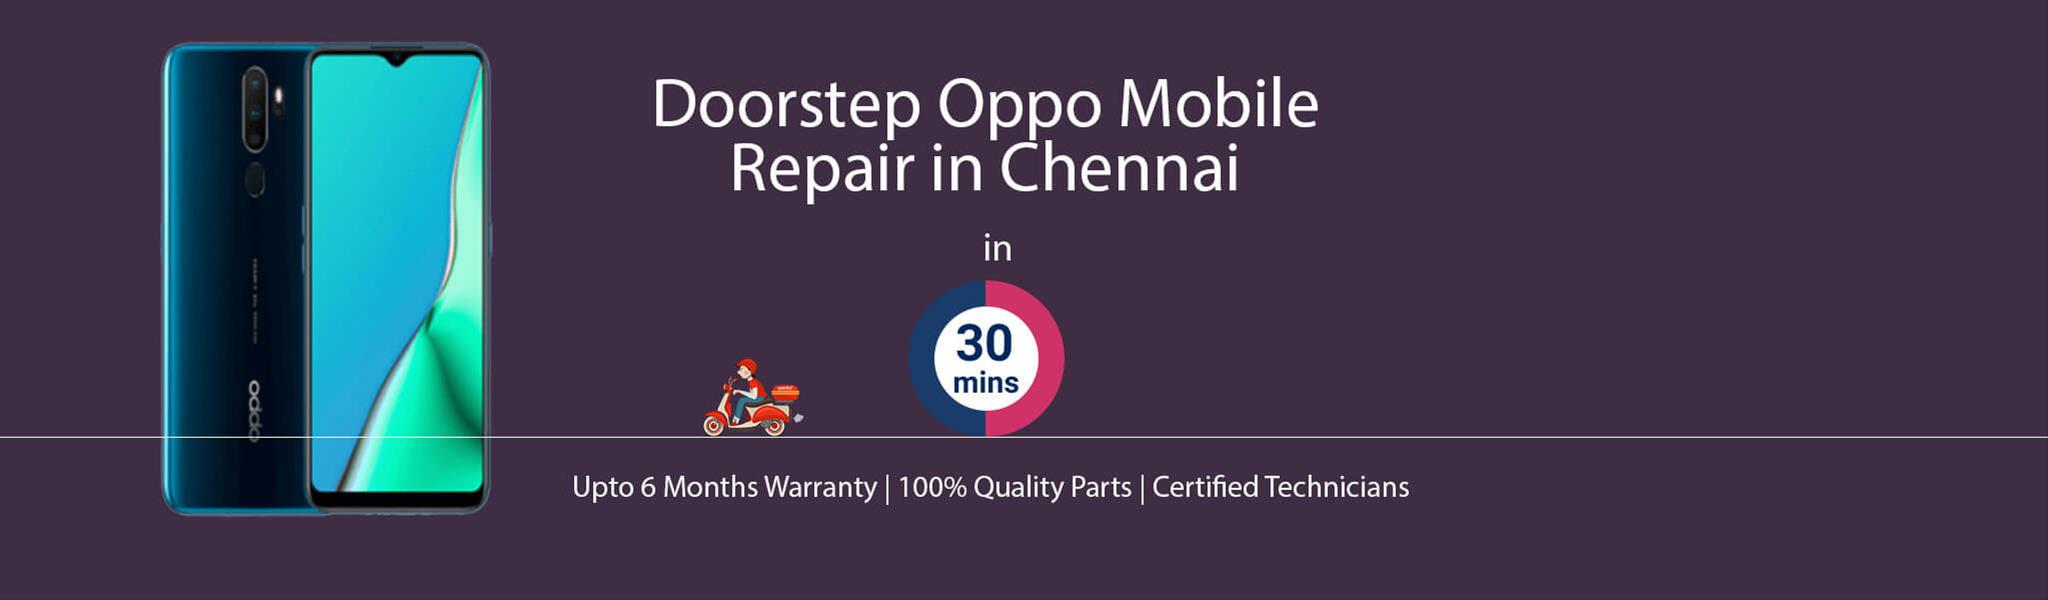 oppo-repair-service-banner-chennai.jpg